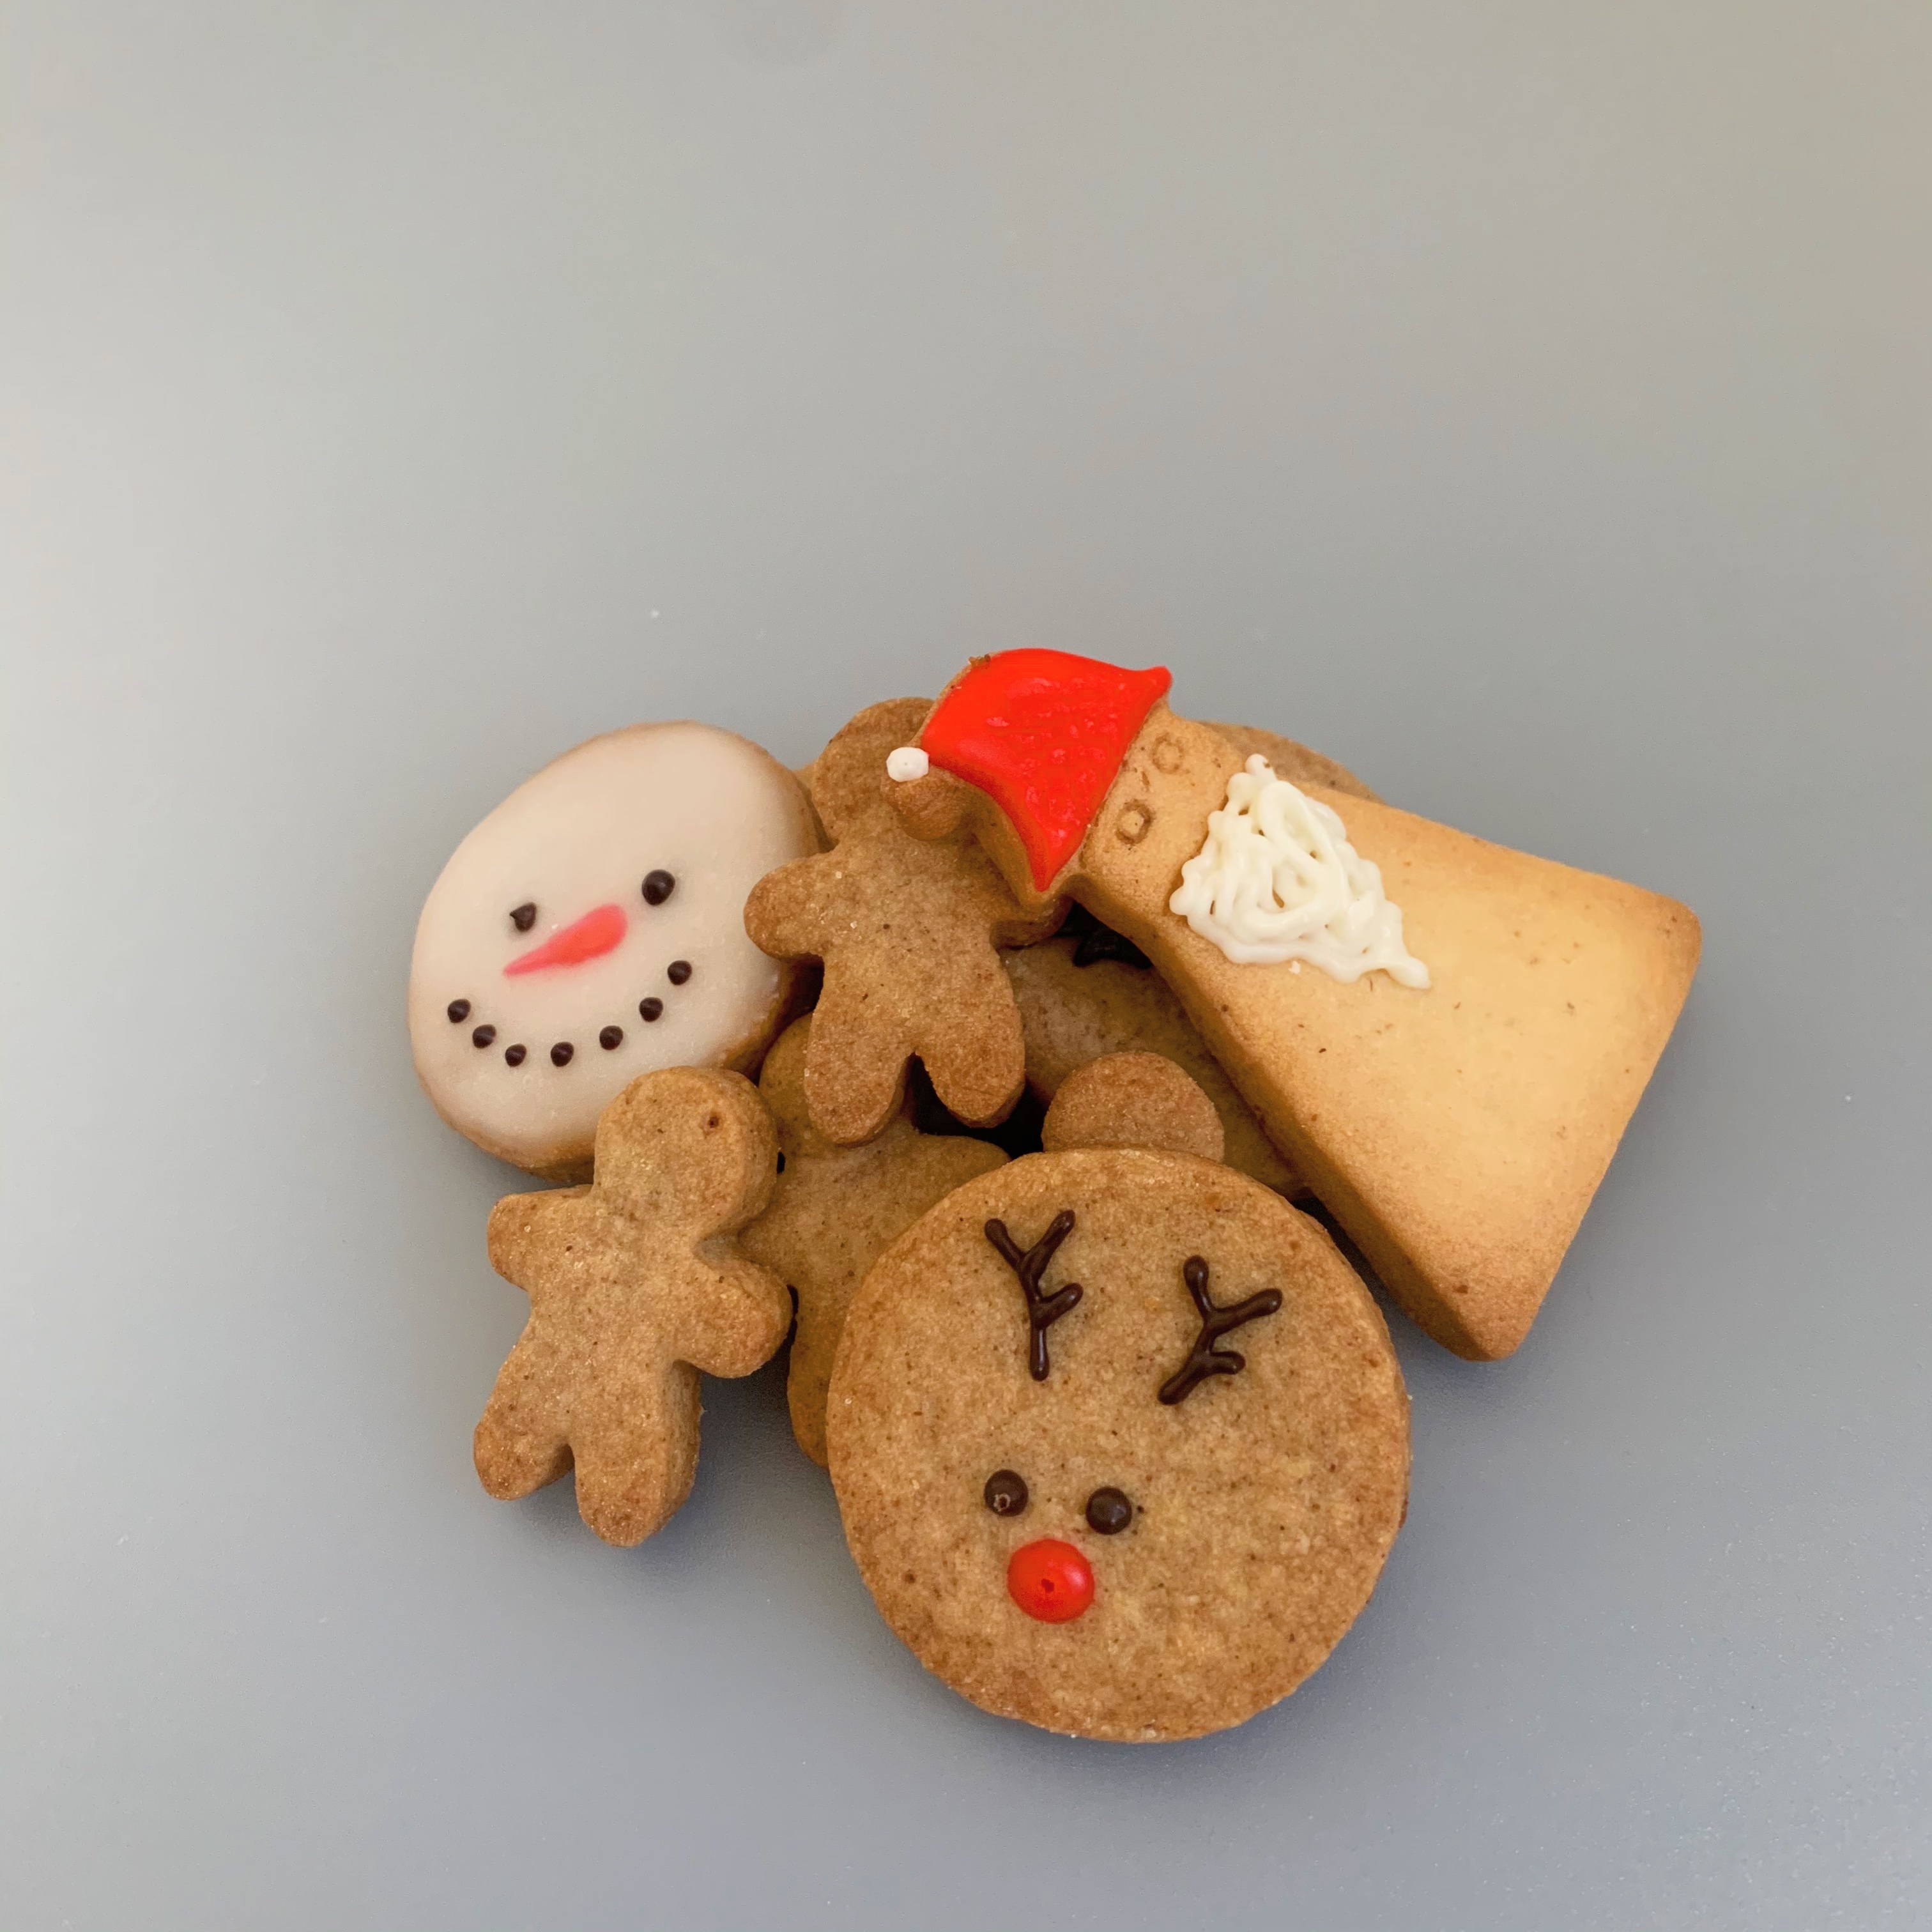 【大人のクリスマスプレゼント】クリスマスクッキーセットのご紹介